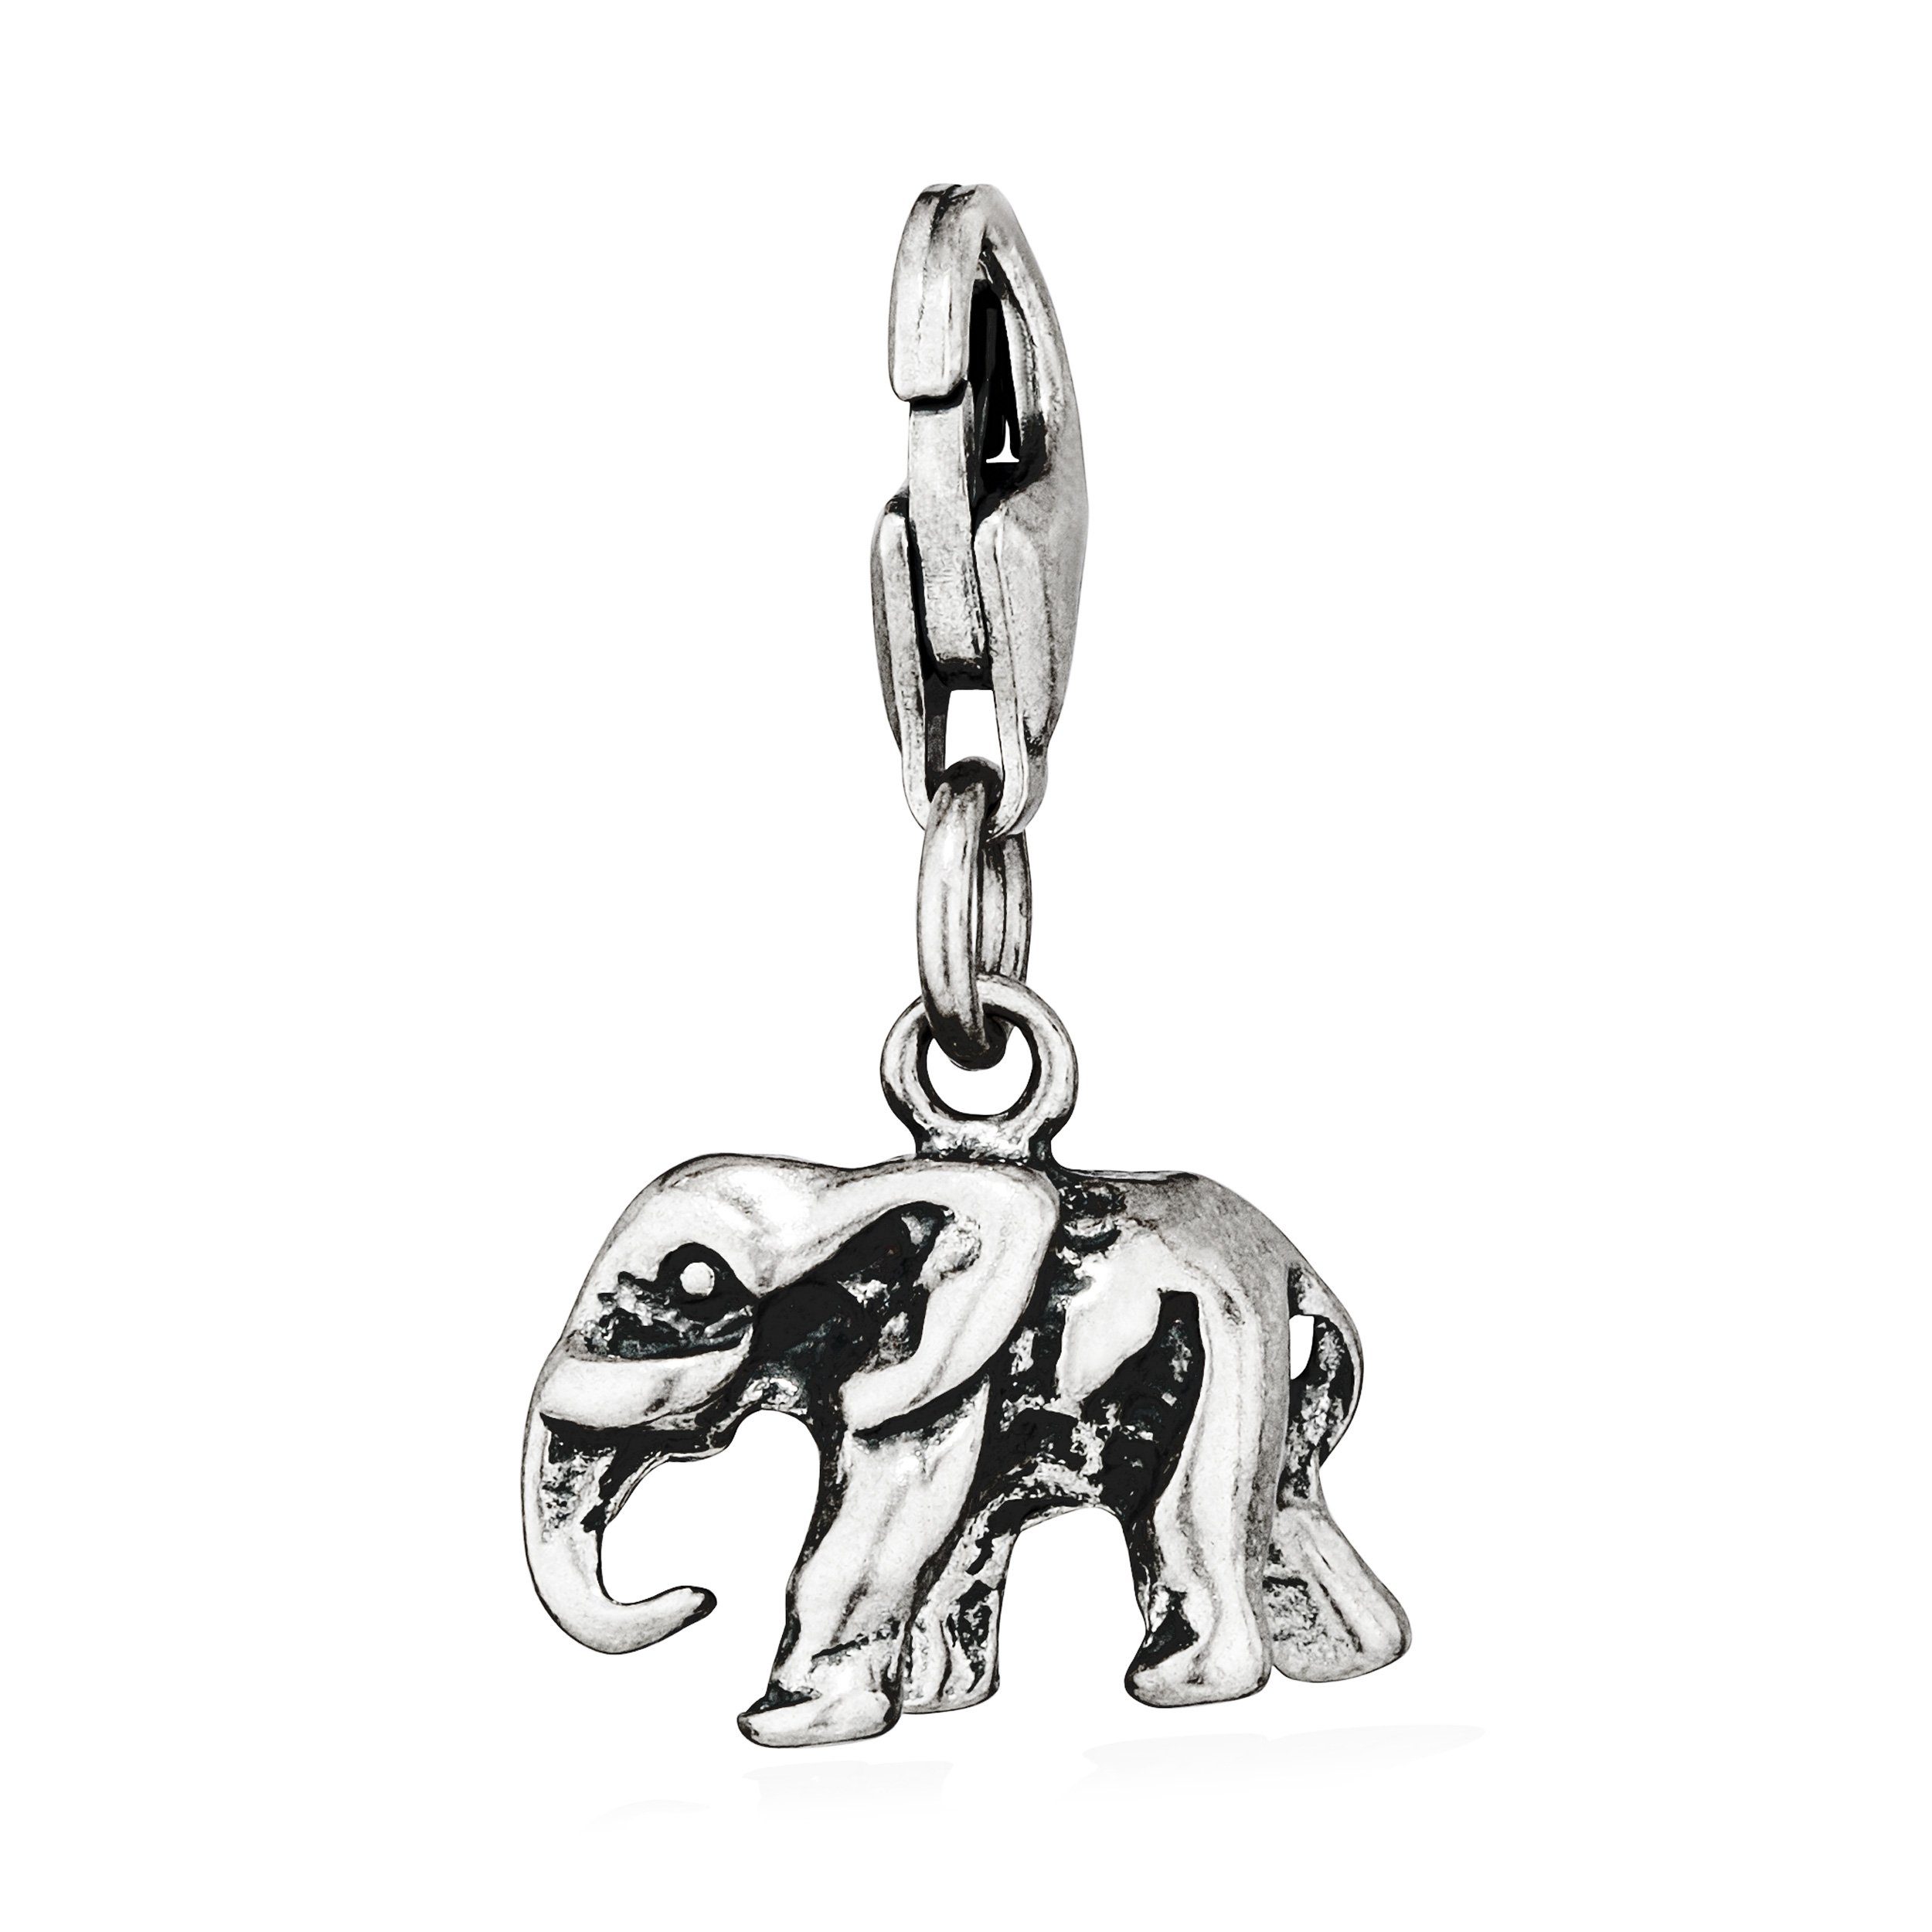 NKlaus Kettenanhänger Charm-Anhänger klein Elefant Silberanhänger Silber antik 925 A 10x13mm